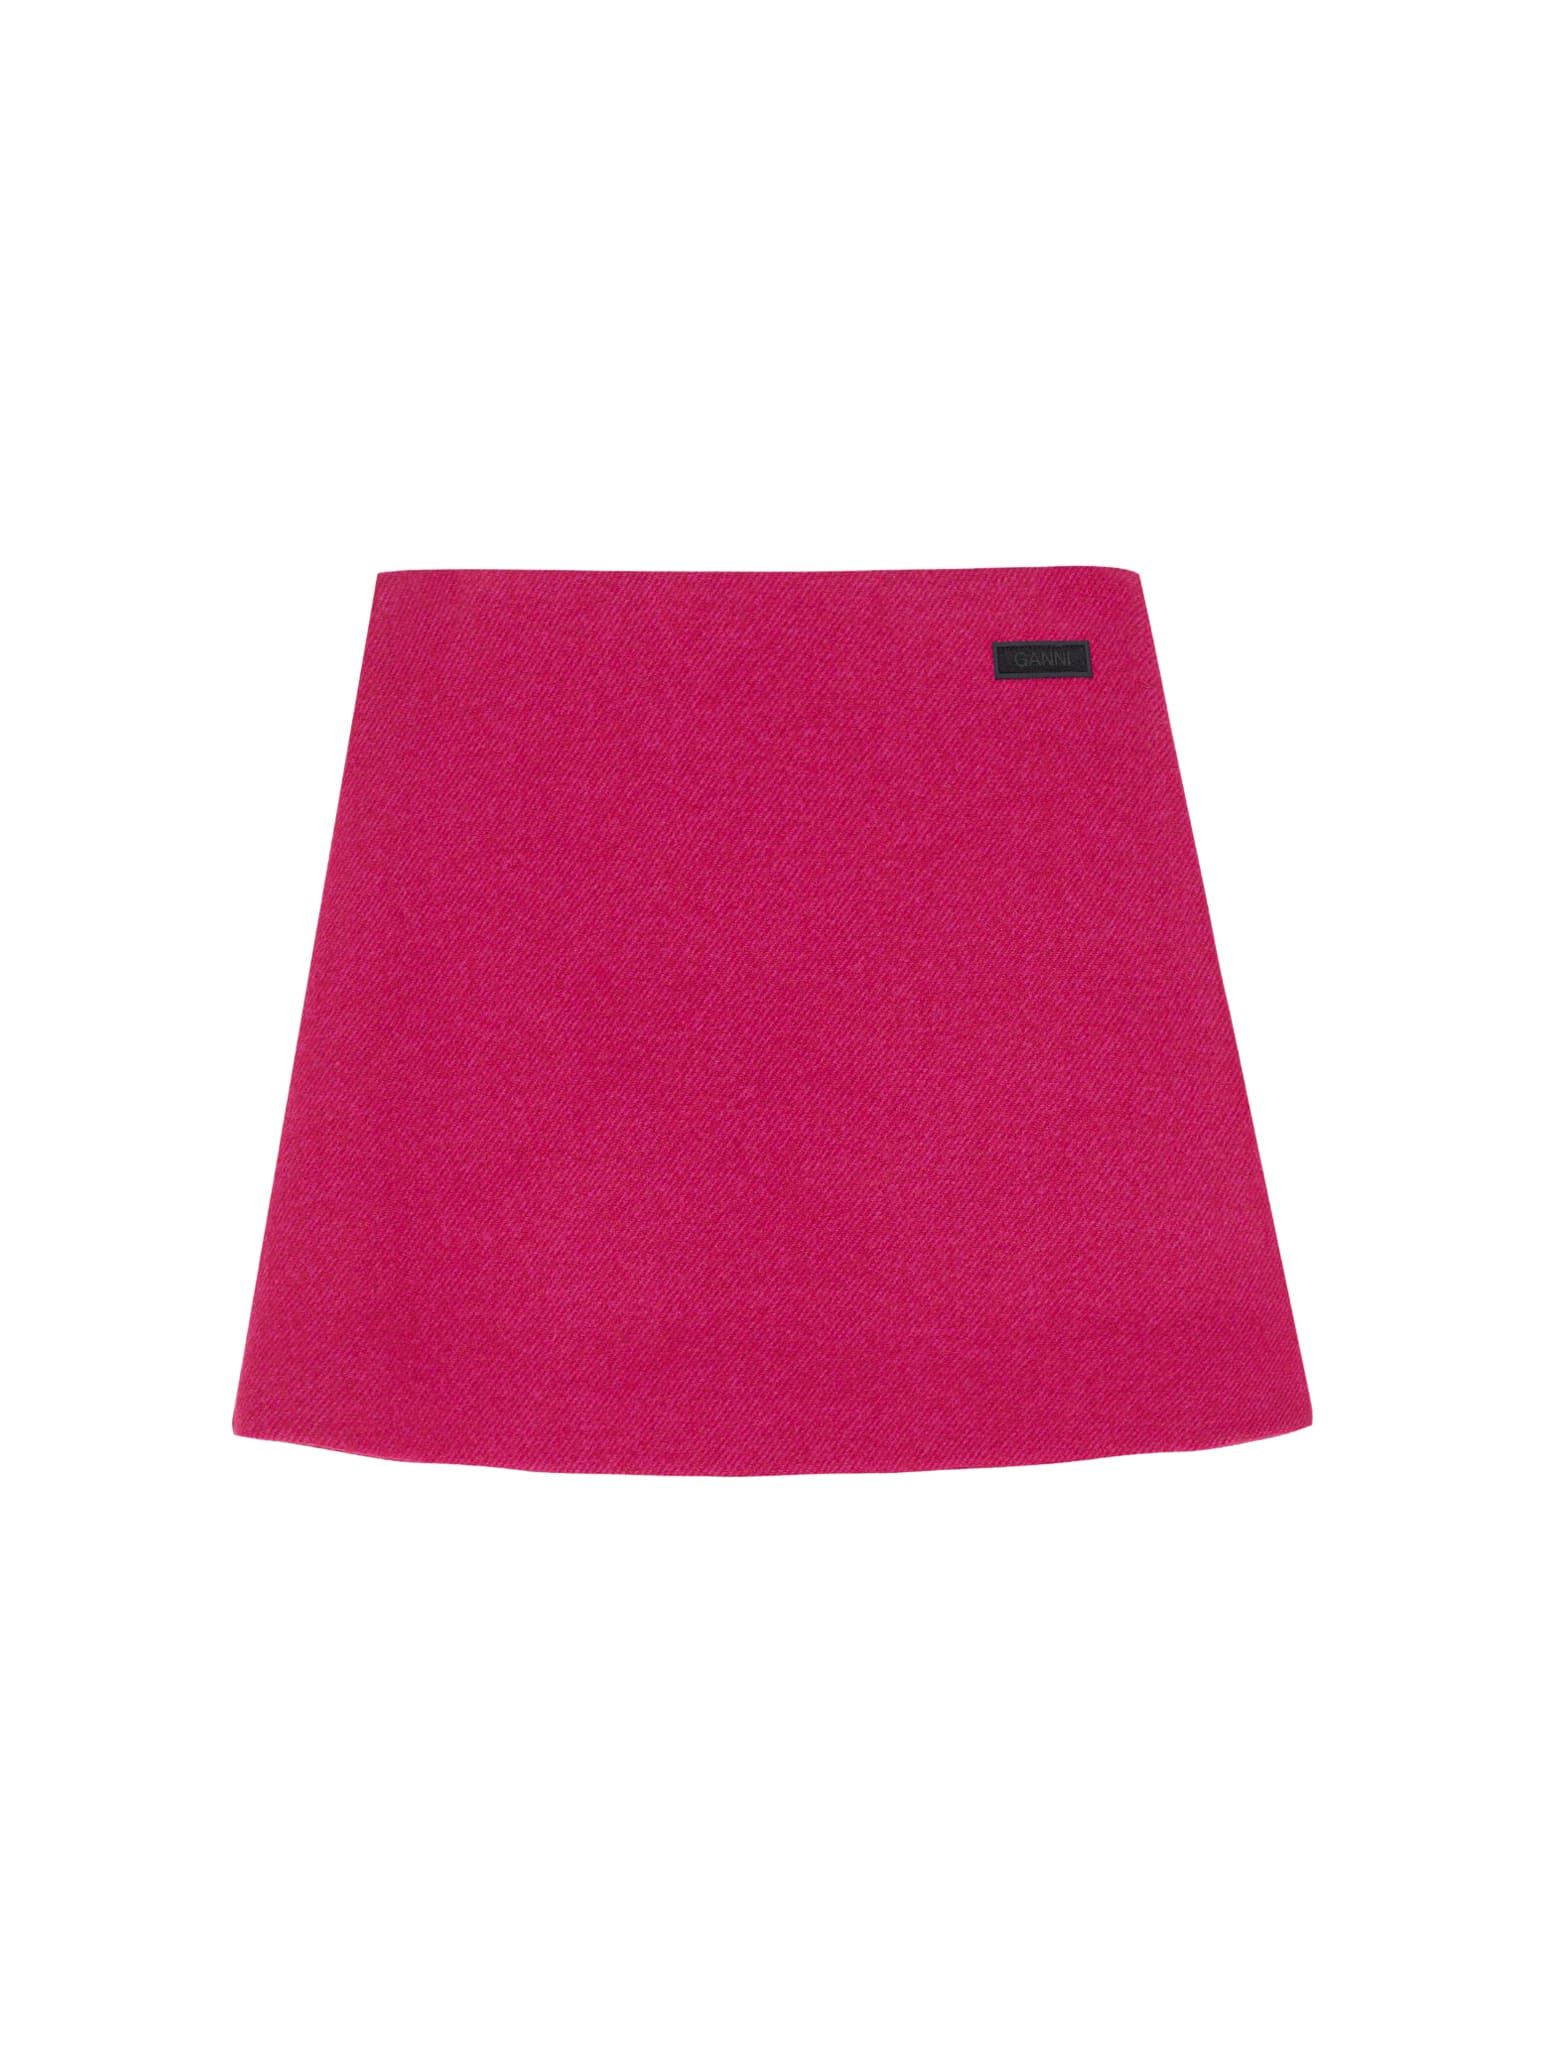 Ganni Twill Wool Suiting Mini Skirt